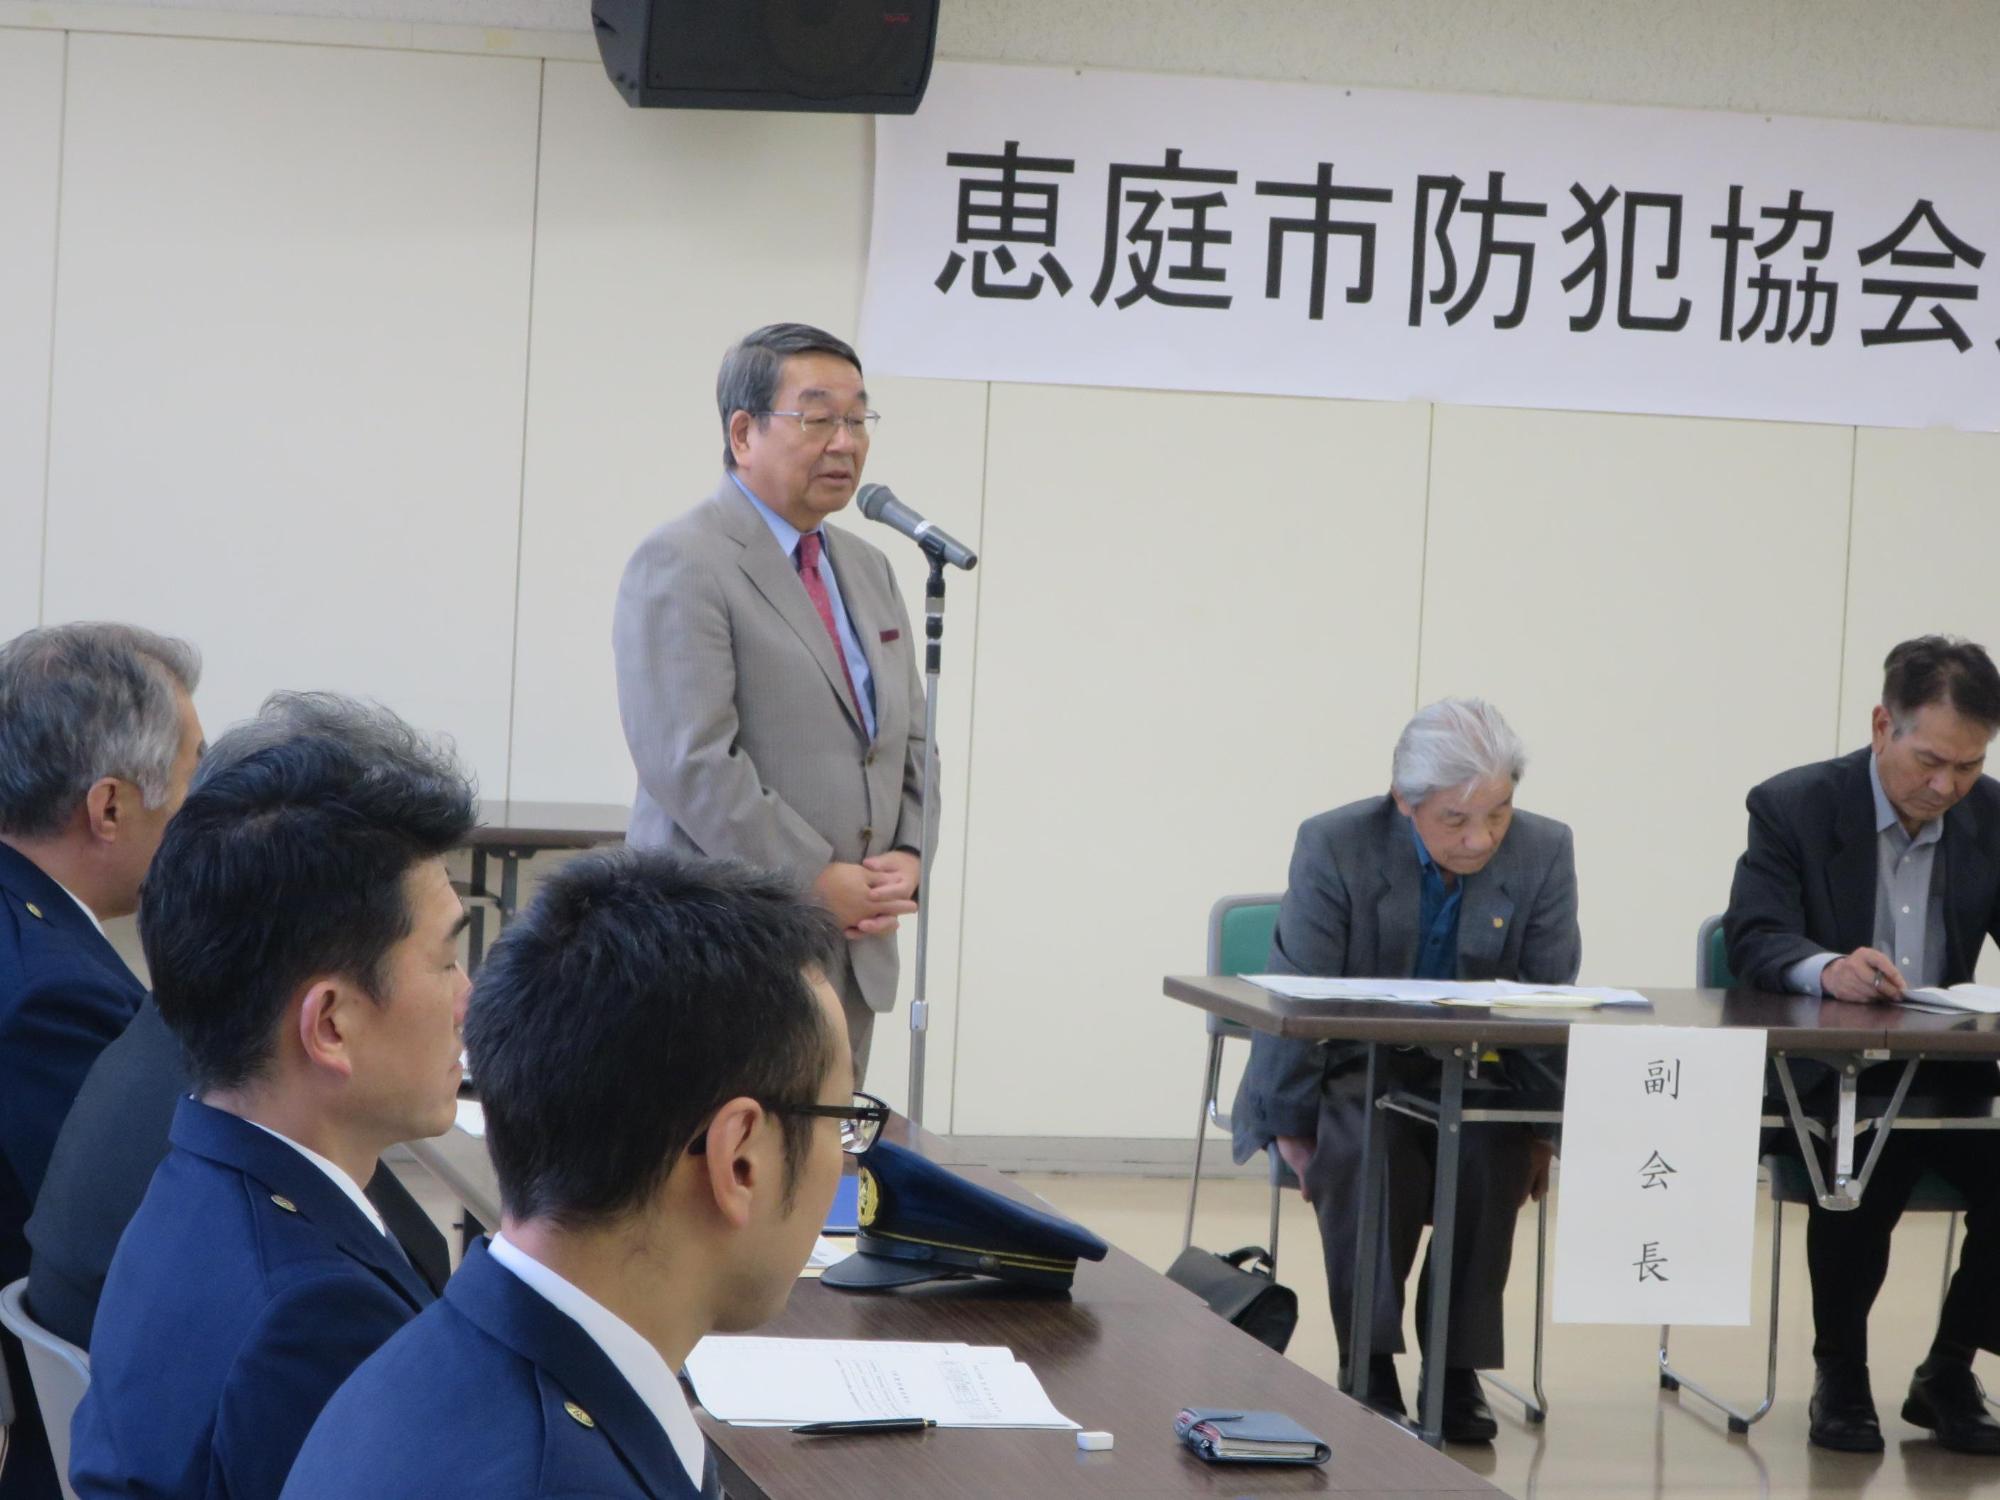 「恵庭市防犯協会連合会定期総会」にて挨拶をしている原田市長の写真